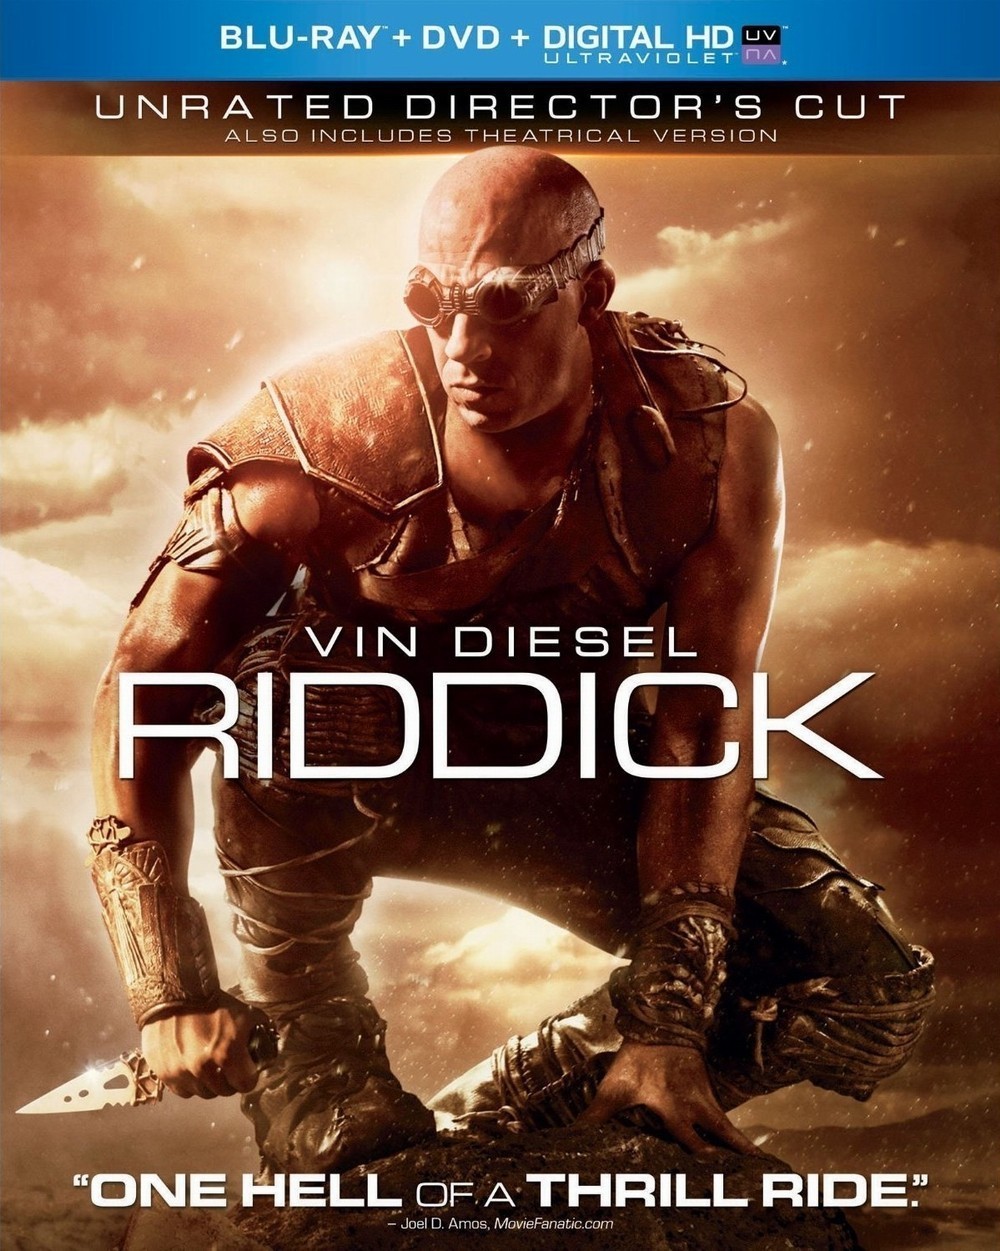  星际传奇1 Riddick超世纪战警Pitch Black  27-055 